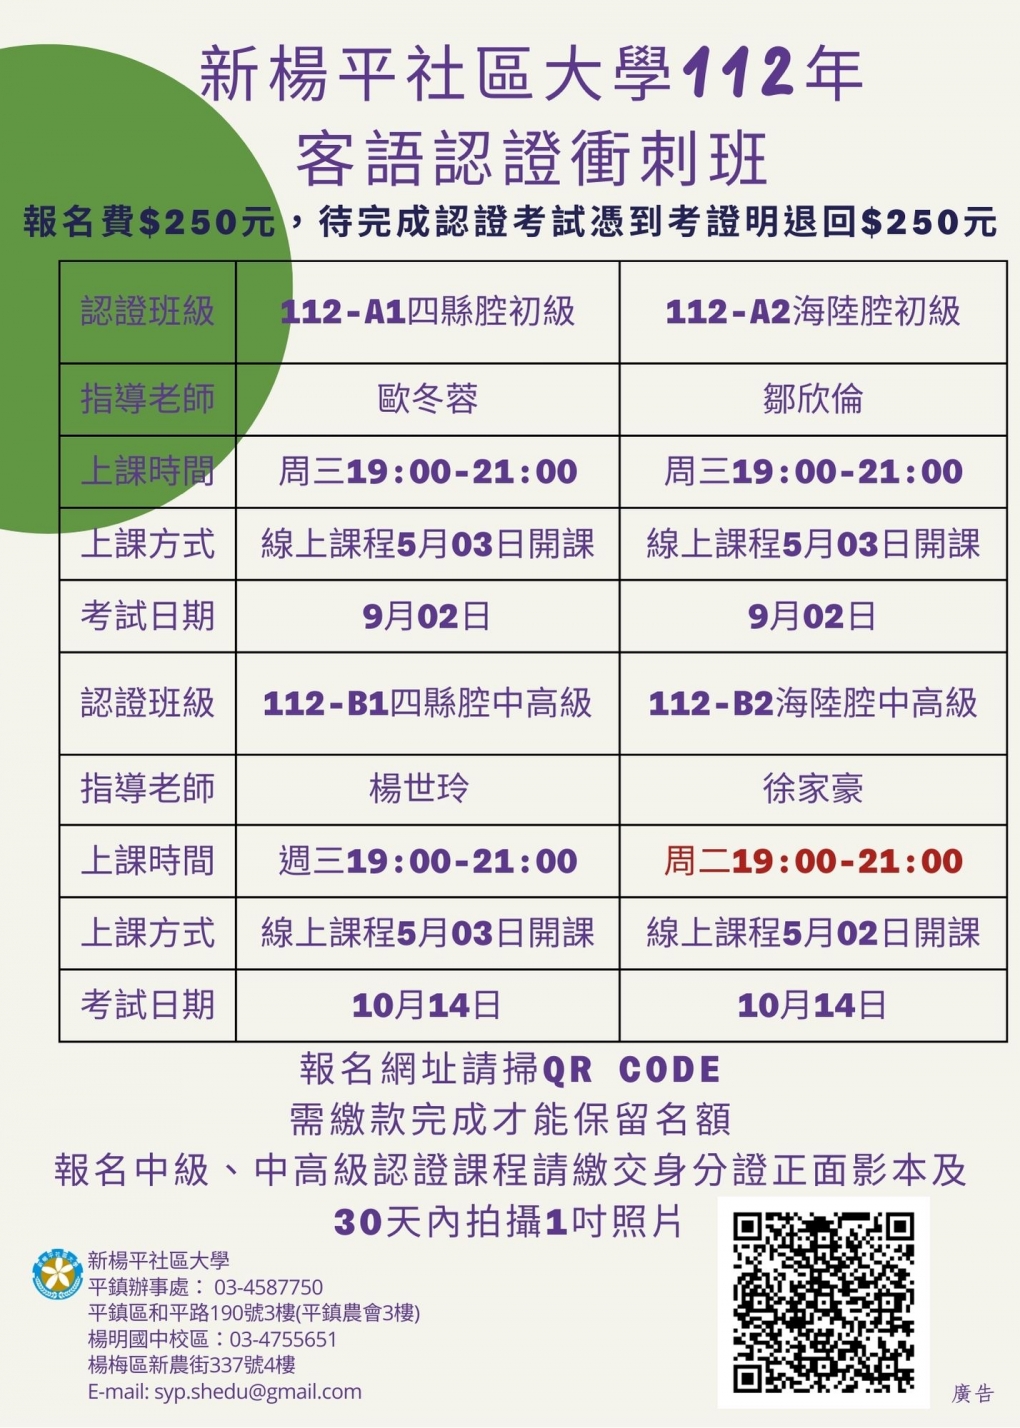 新楊平社大112年客語認證課程(免費課程)第二梯次報名開始囉圖片1